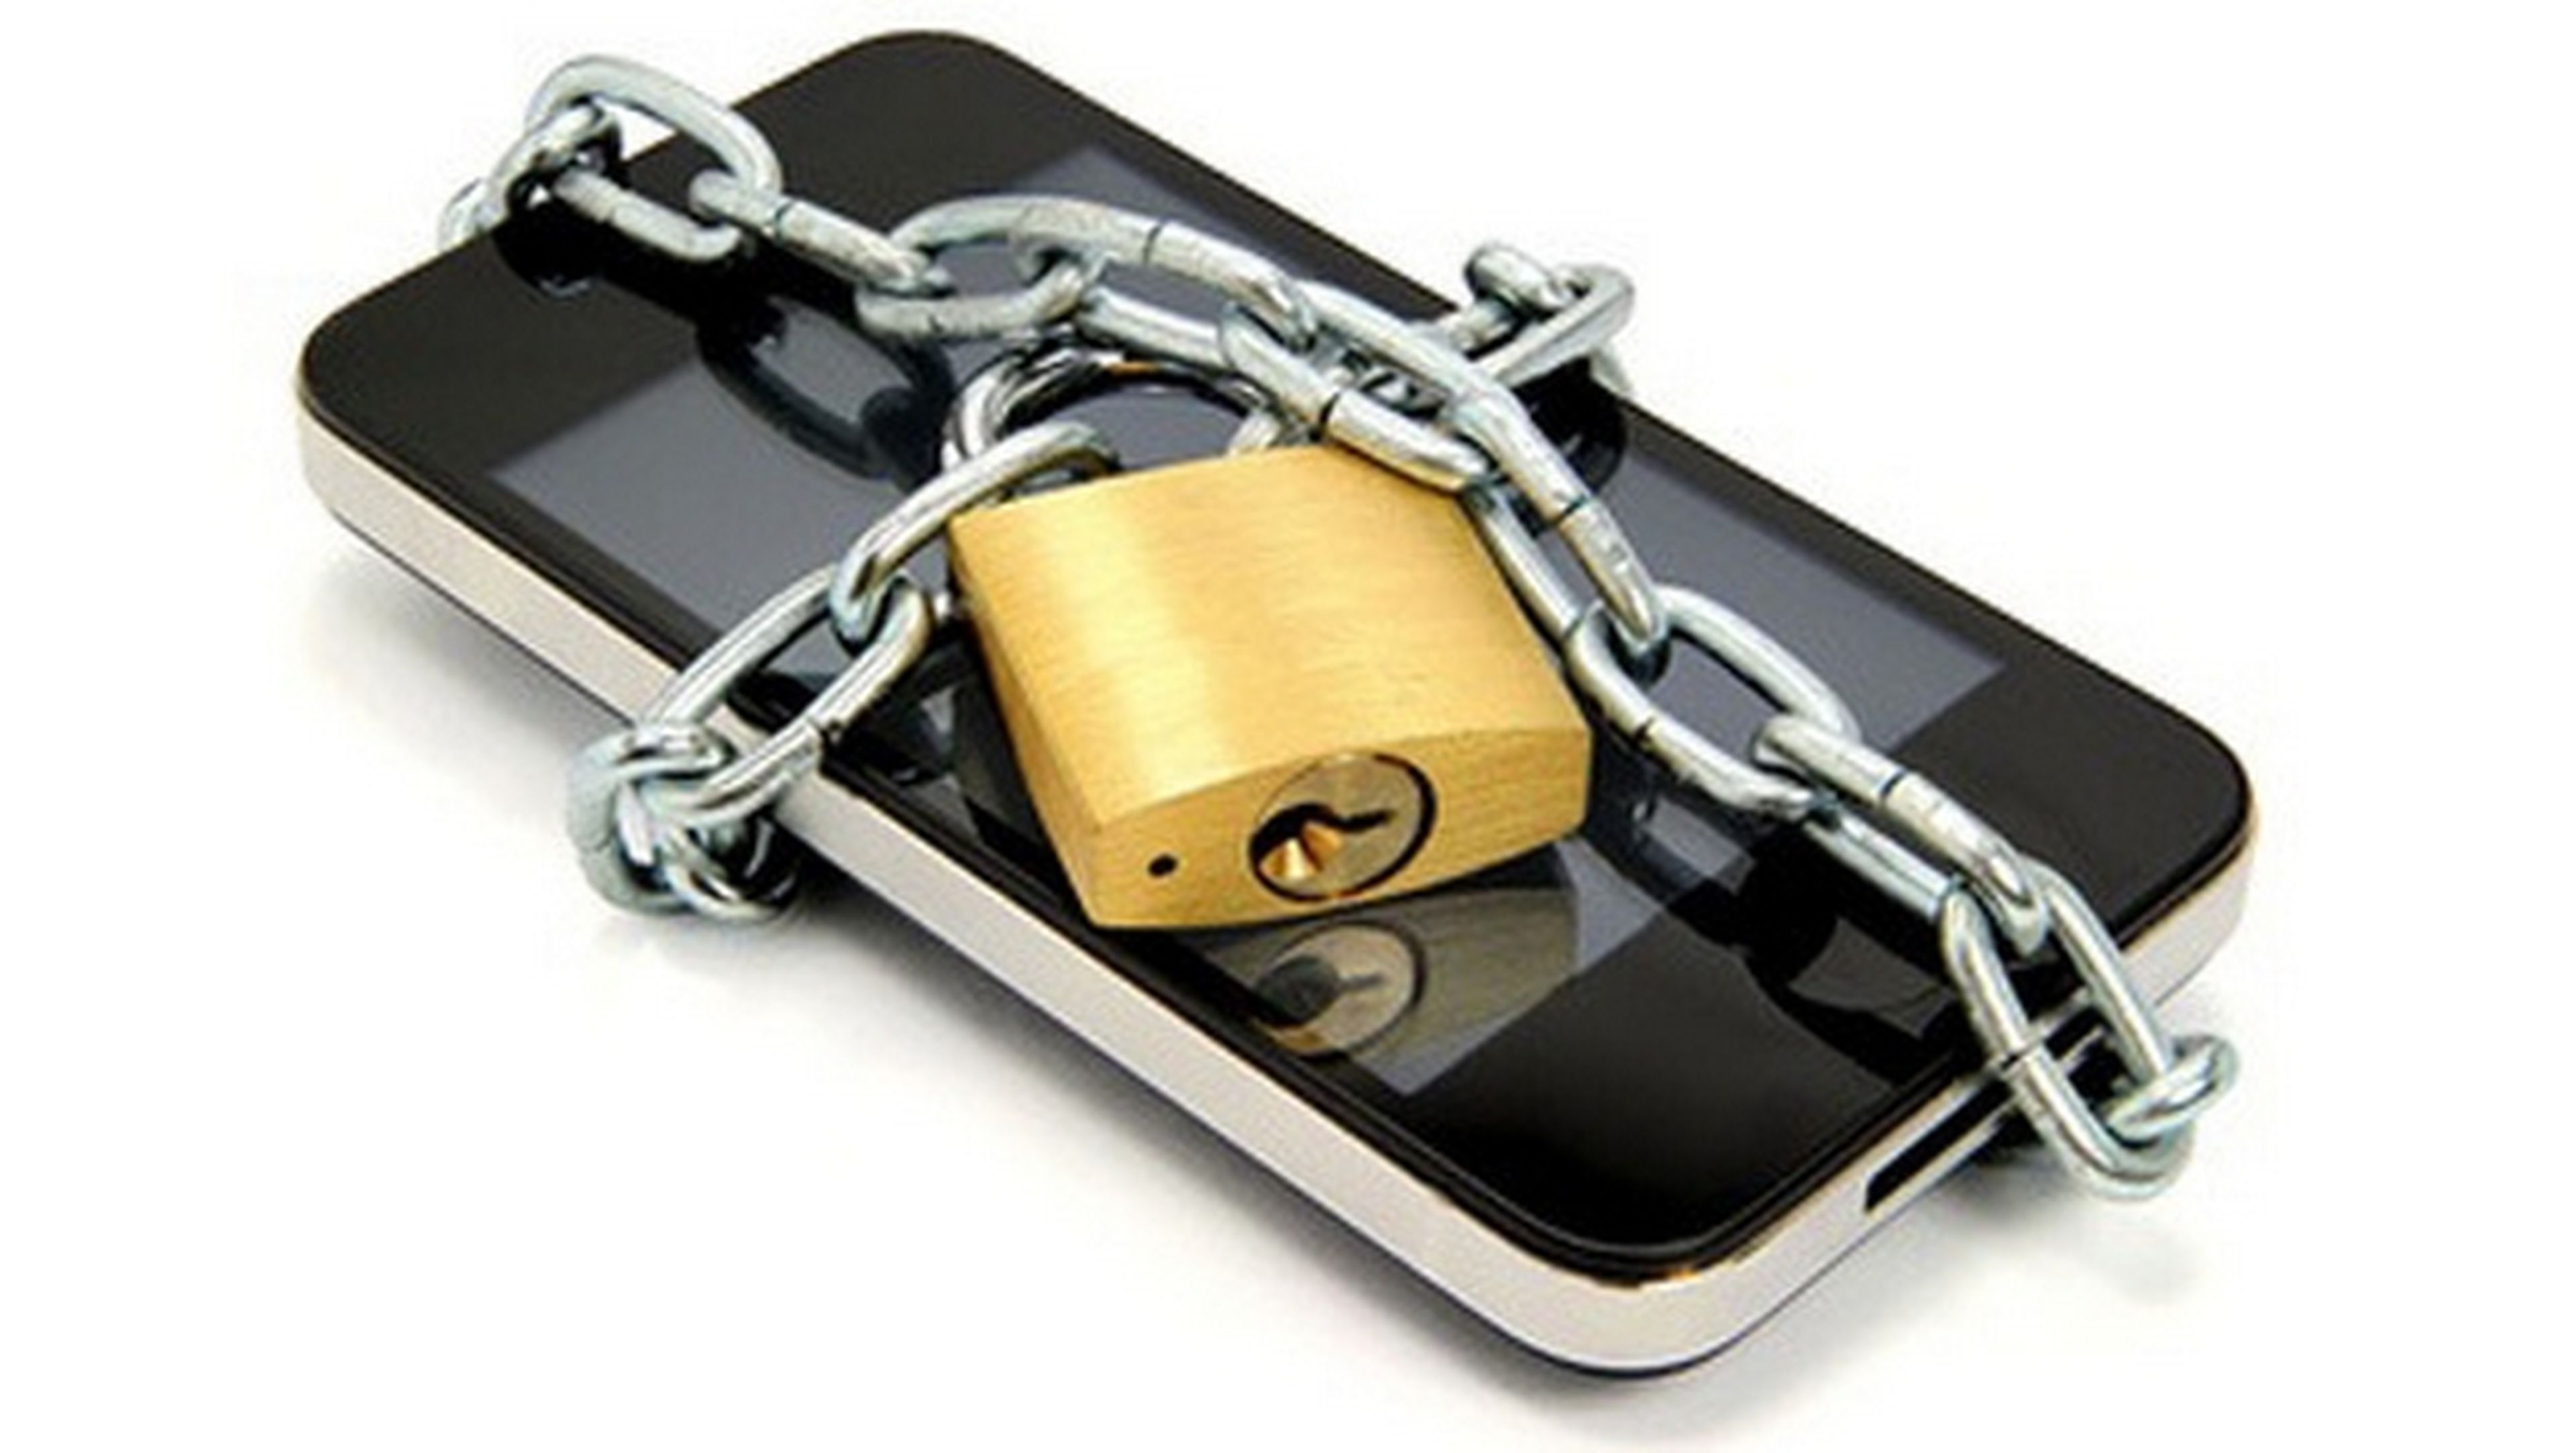 Koler.A, un ransomware secuestra tu smartphone Android y pide un rescate de 300 $